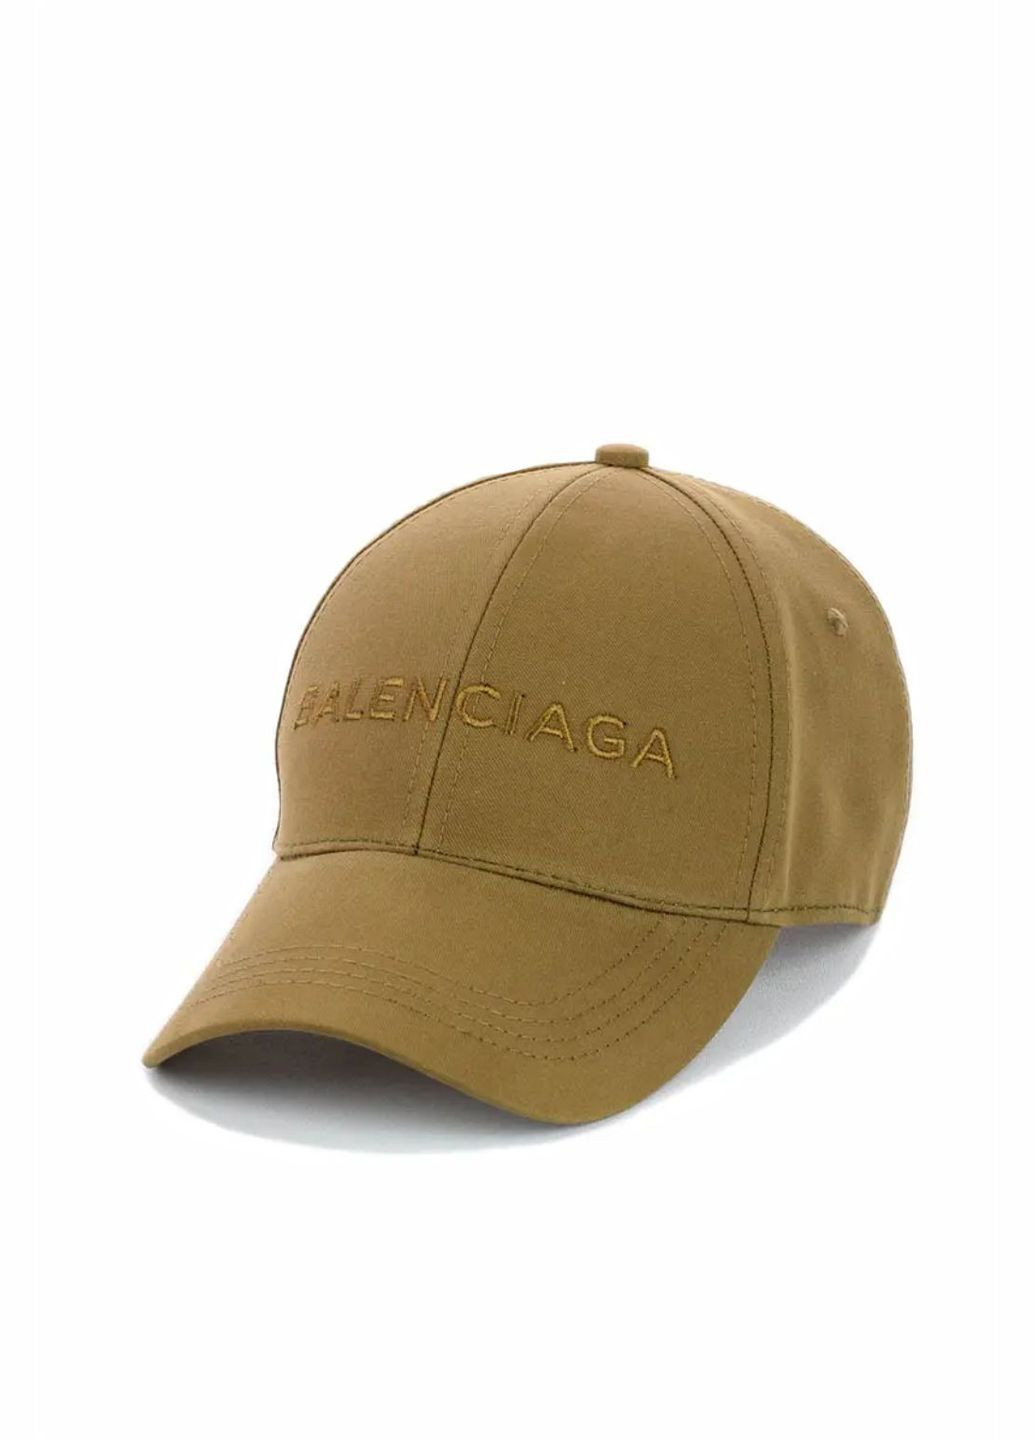 Кепка молодежная Balenciaga / Баленсиага S/M No Brand кепка унісекс (280928956)